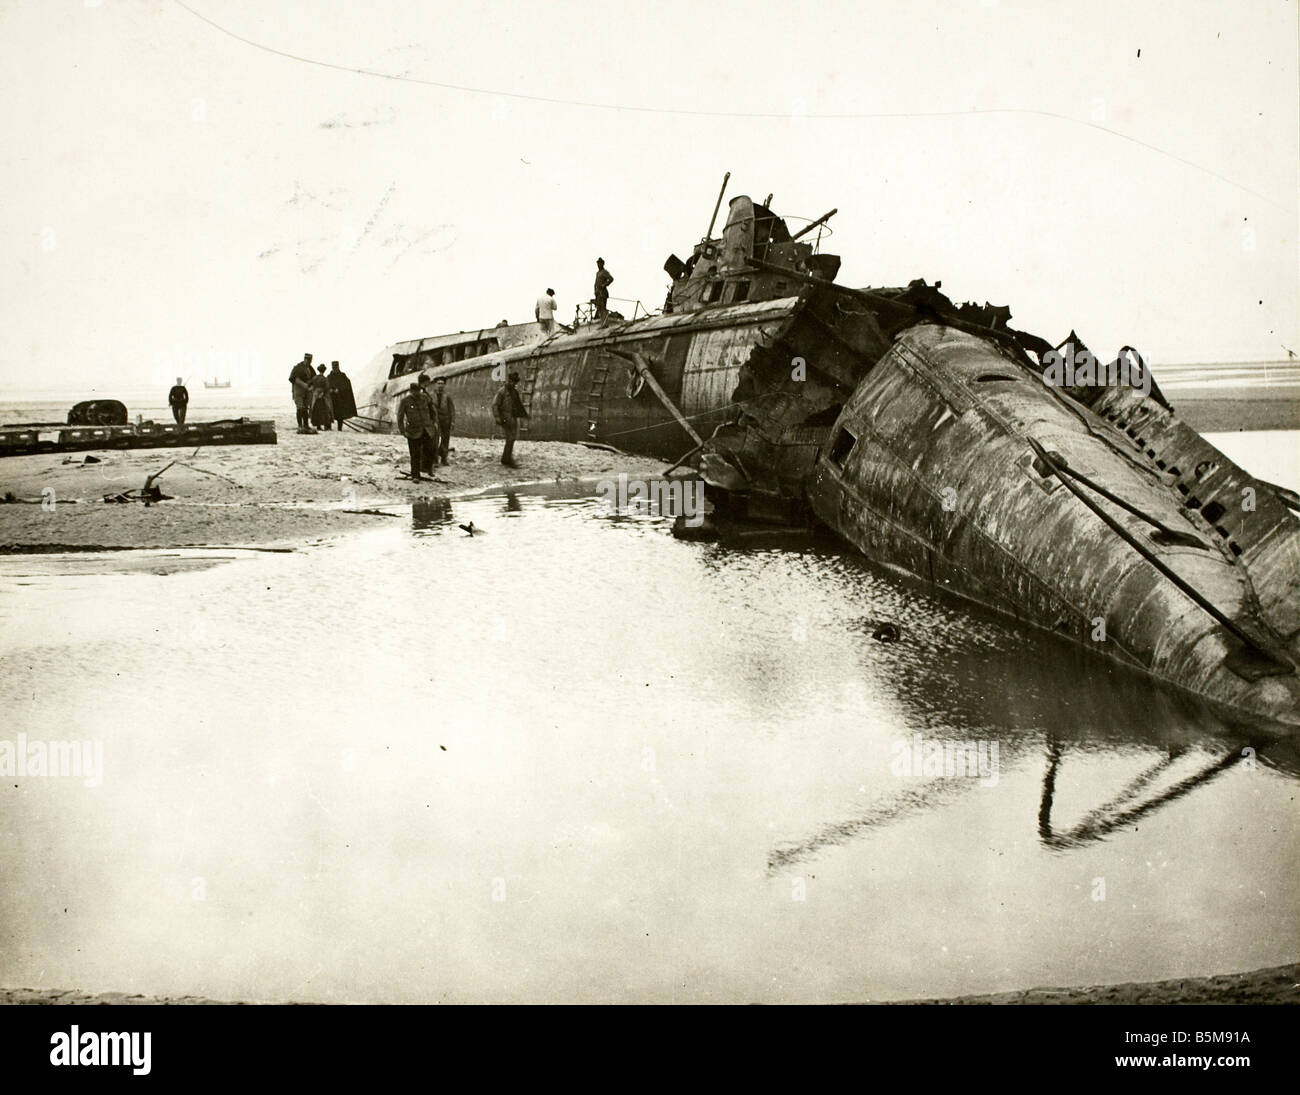 2 G55 M1 1917 14 sous-marins allemands de la PREMIÈRE GUERRE MONDIALE L'histoire de la côte française Première Guerre mondiale Guerre Navale au sous-marin détruit Germand c Français Banque D'Images